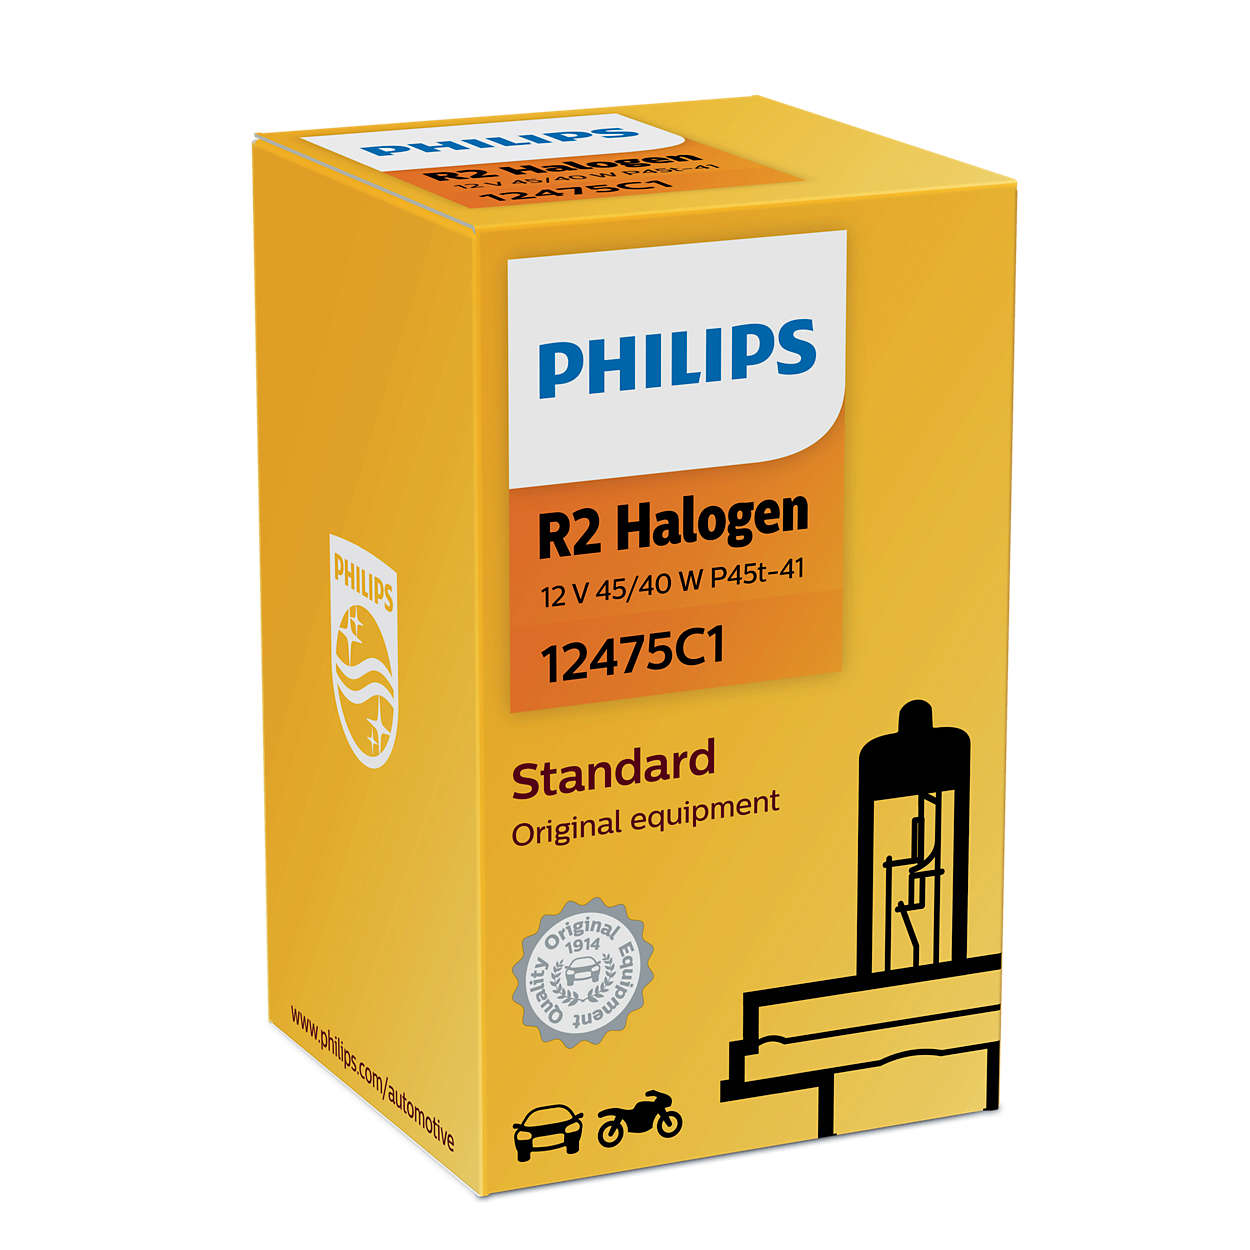 Philips vision R2 12V 45/50WcP45t-41 C1 - Enkel